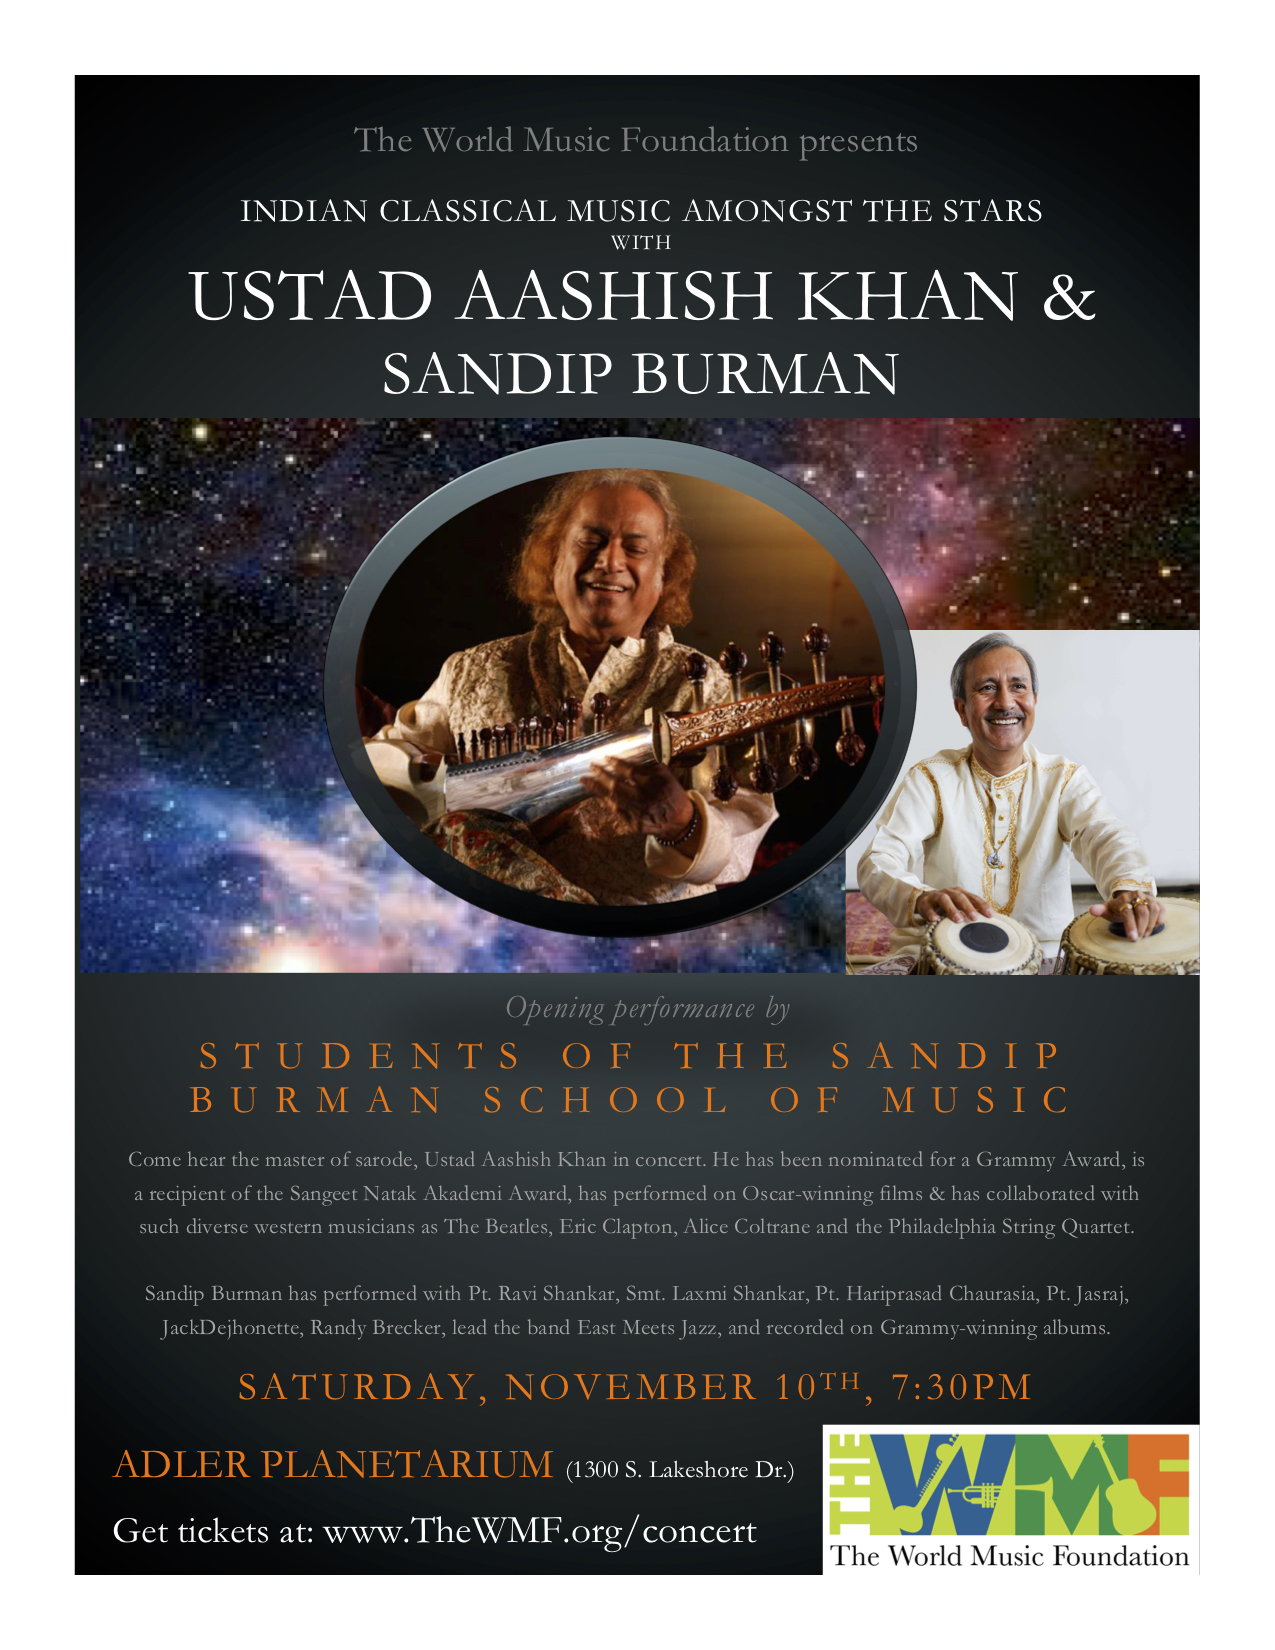 Ustad Aashish Khan & Sandip Burman